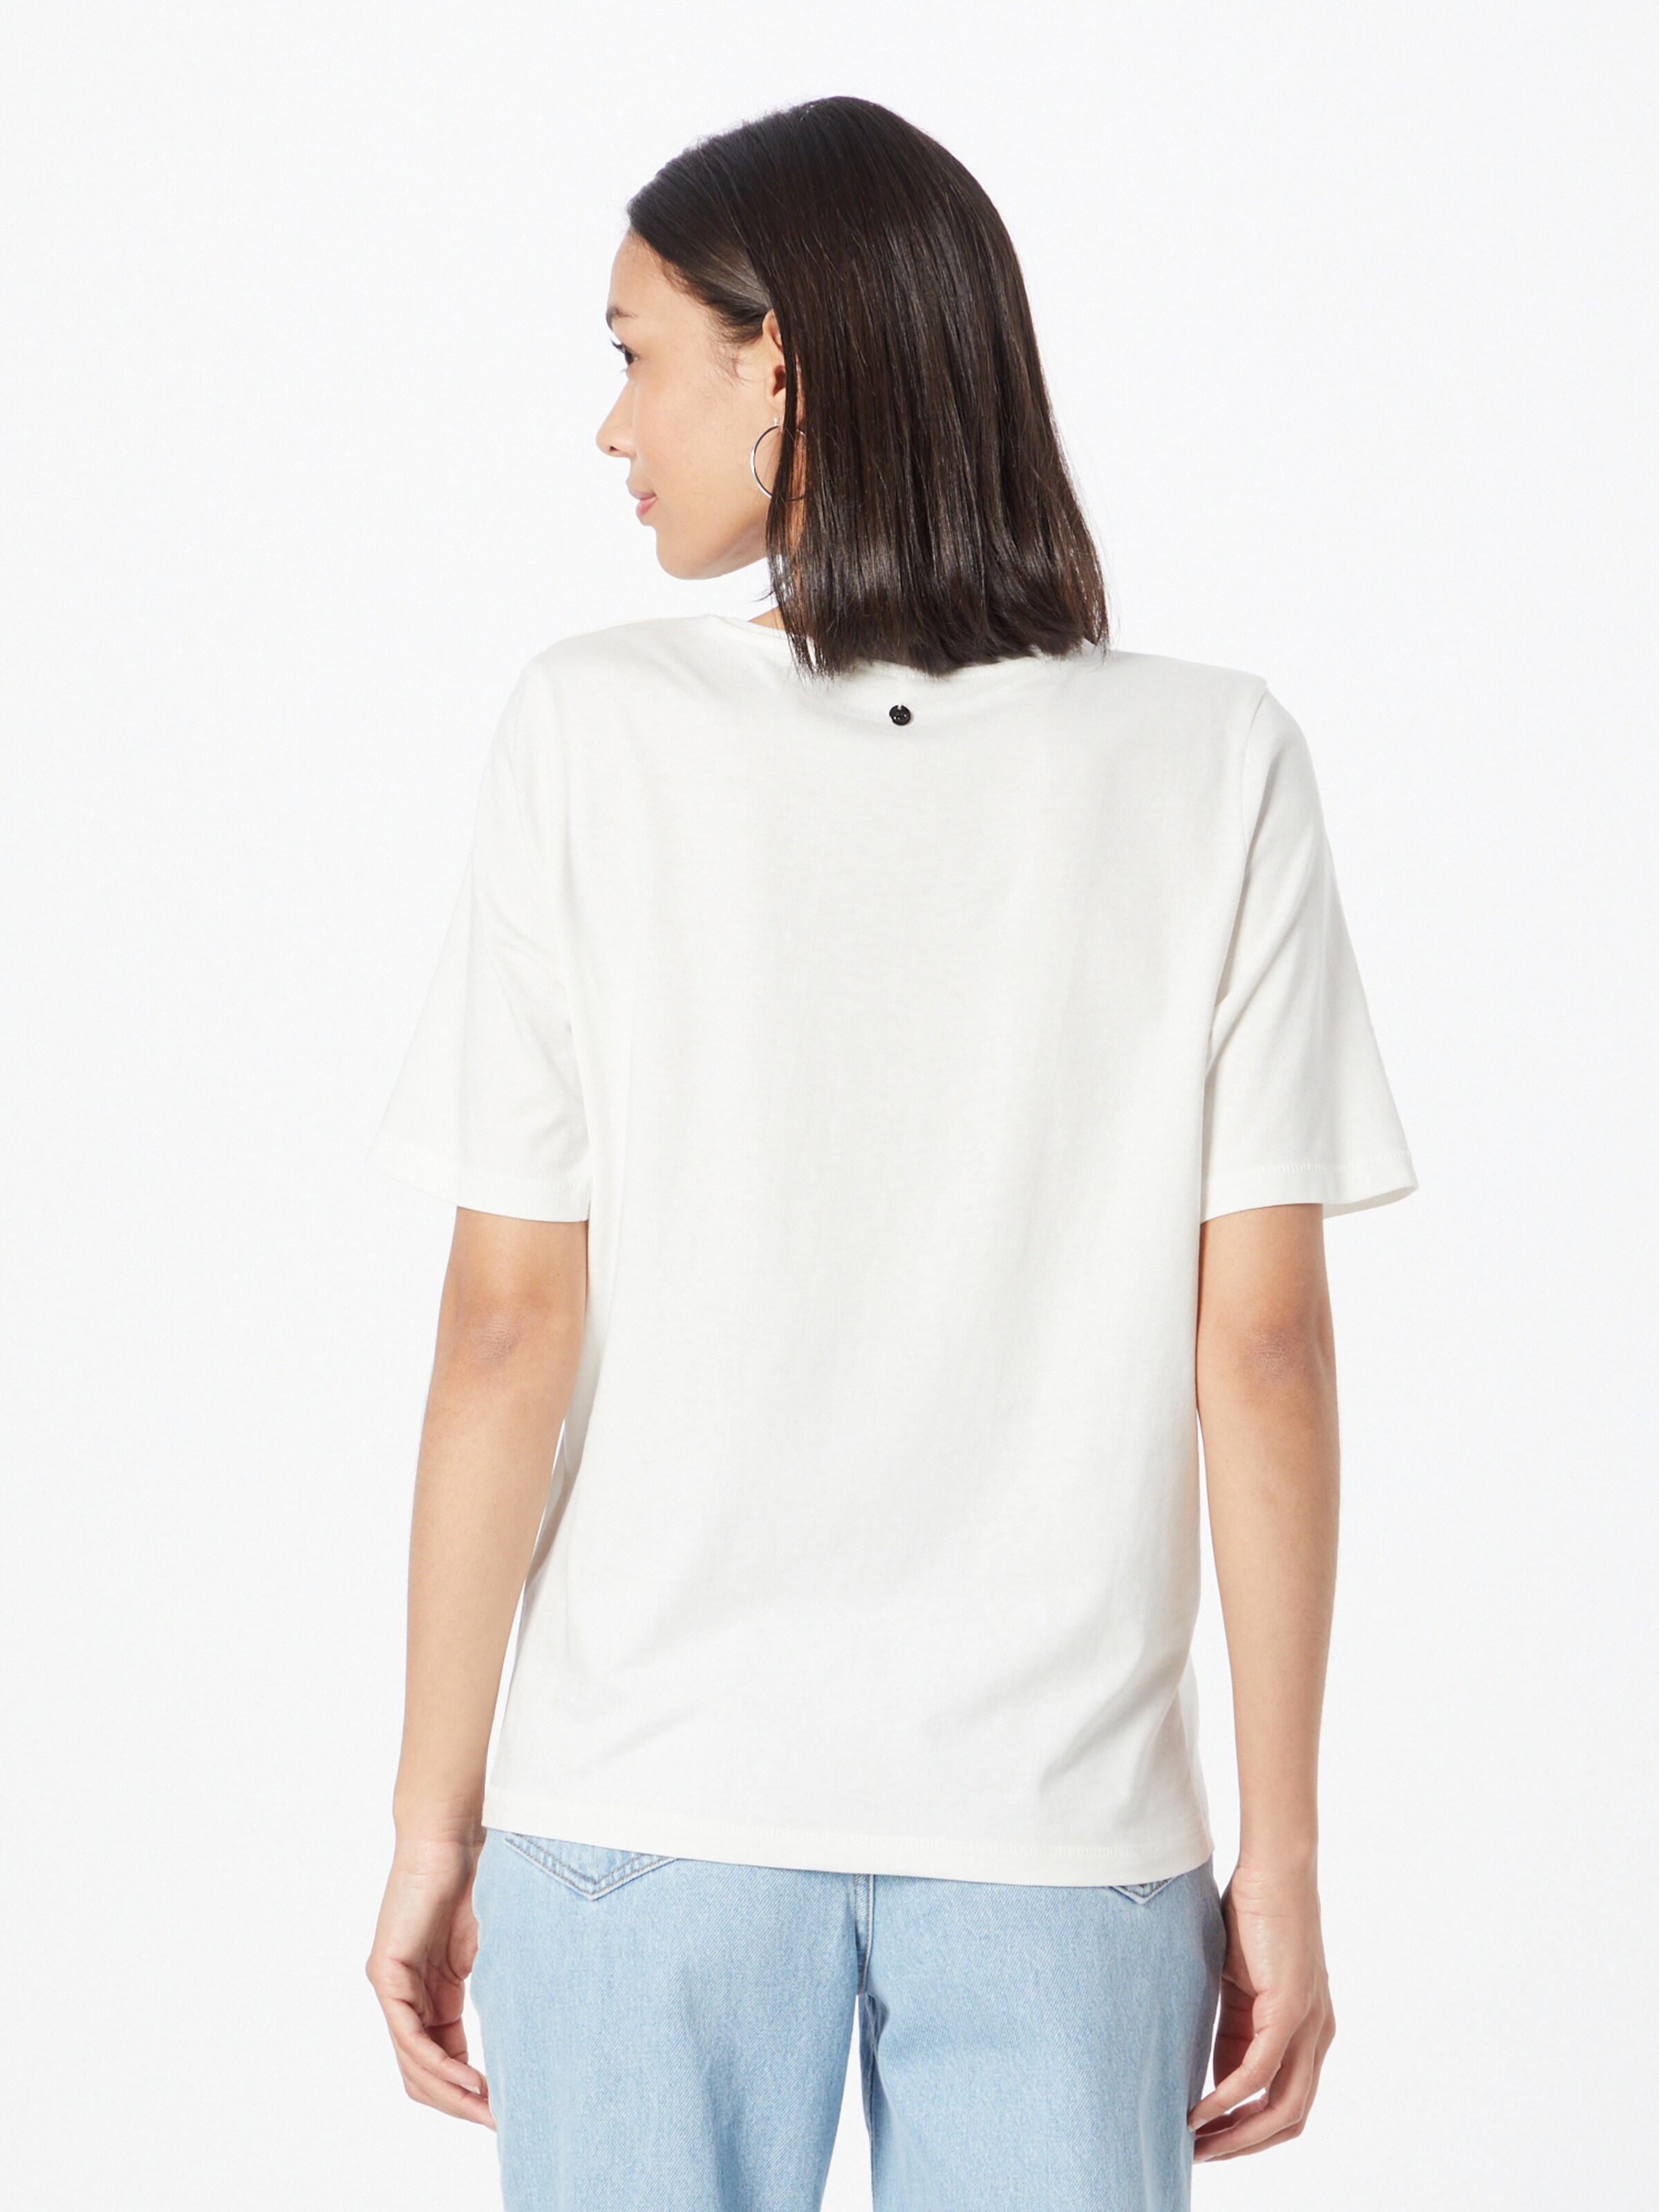 Frauen Shirts & Tops GERRY WEBER T-Shirt in Weiß - AL01803